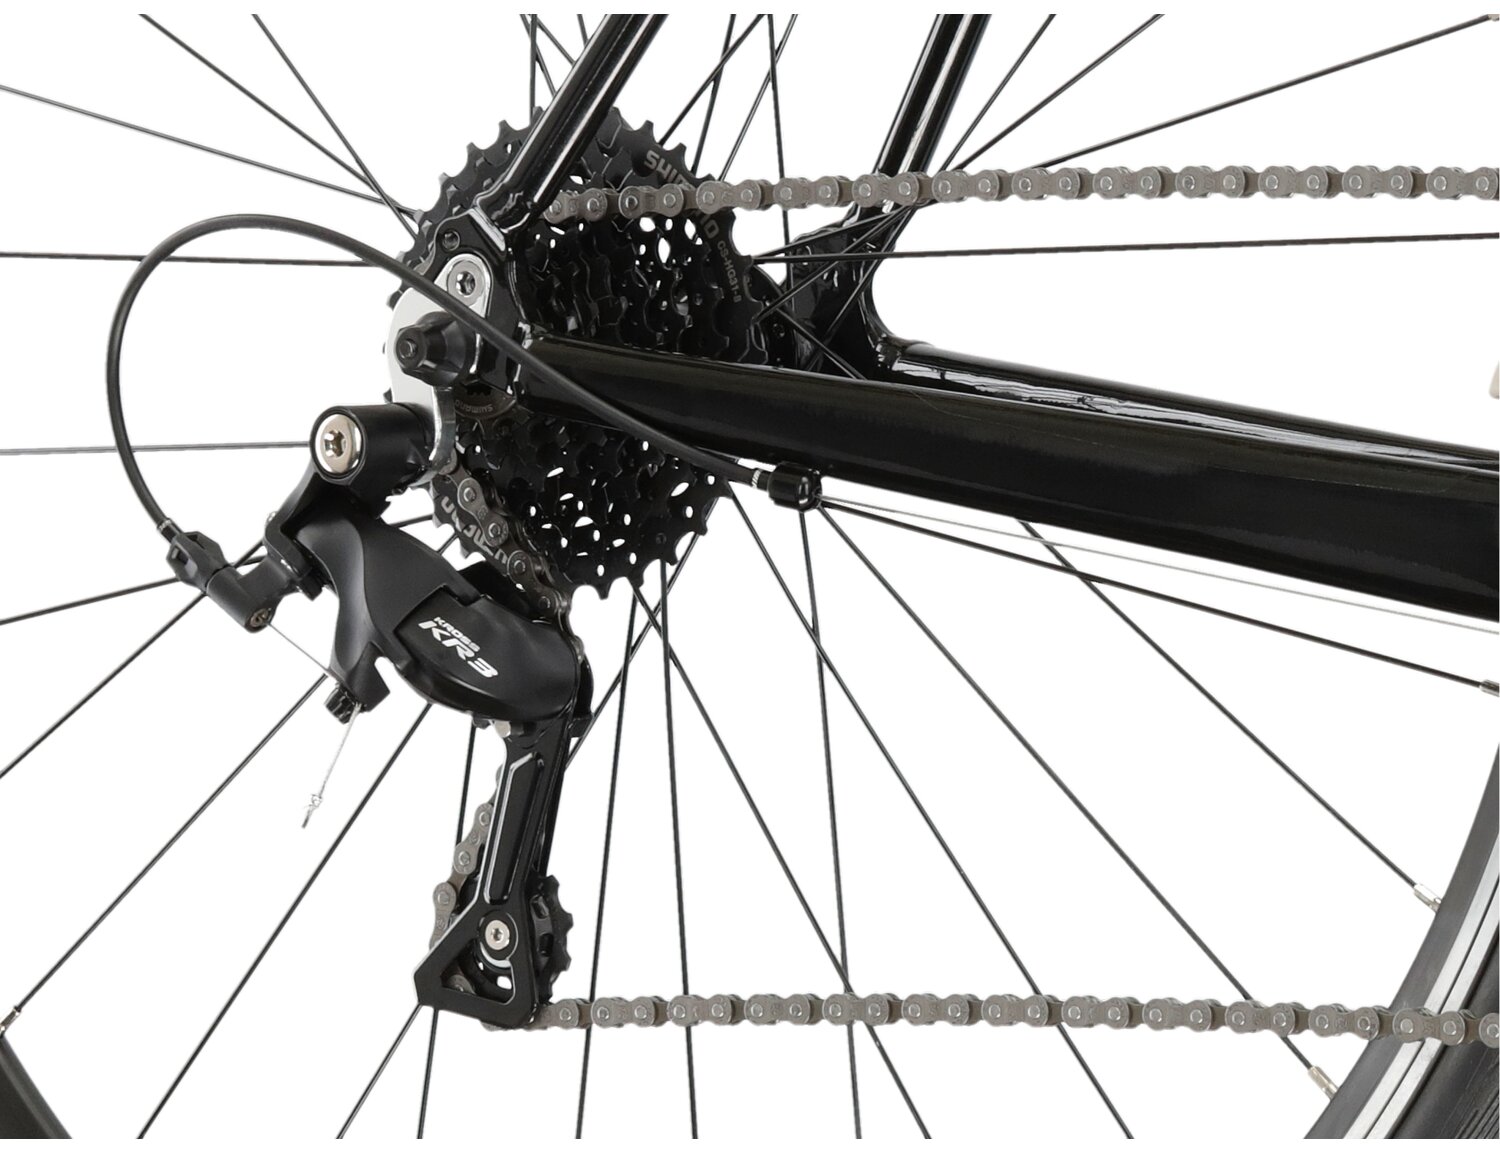  Tylna ośmiorzędowa przerzutka KR3 R5008 oraz hamulce v-brake Tektro R315 w rowerze szosowym KROSS Vento 2.0 KRX 